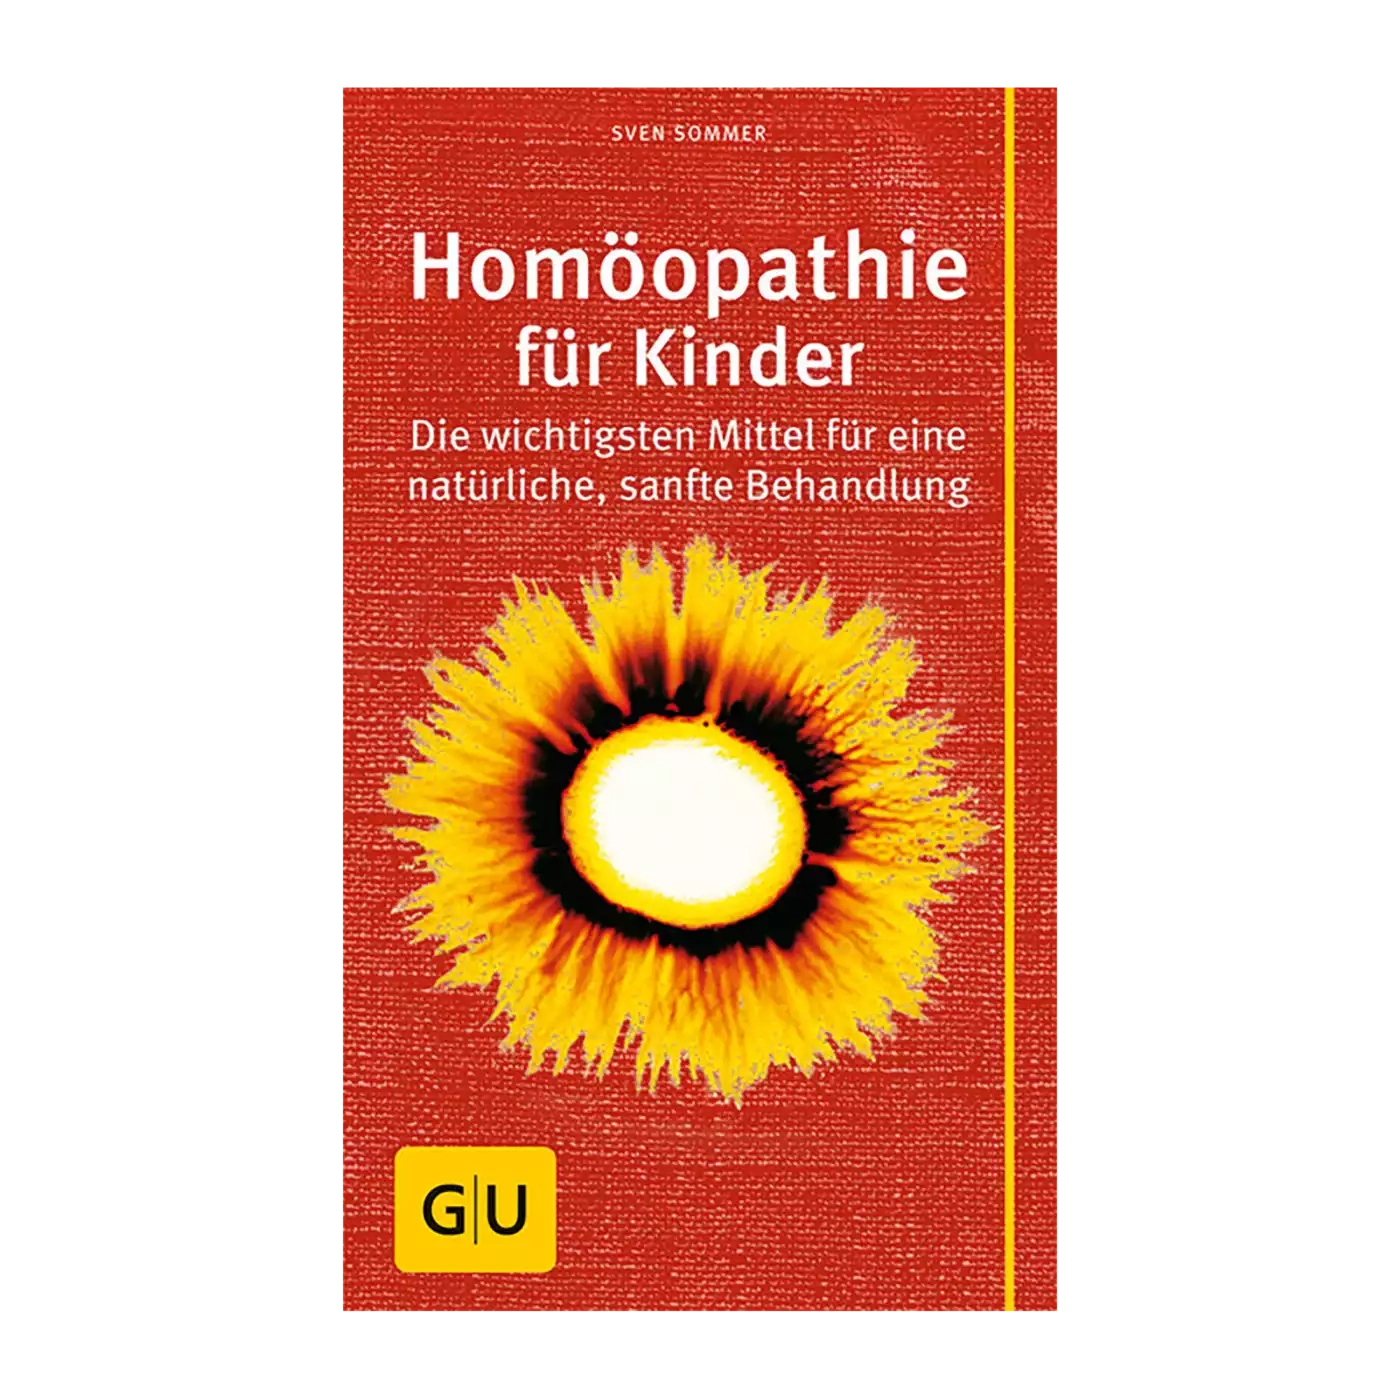 Homöopathie für Kinder GU 2000570956606 1